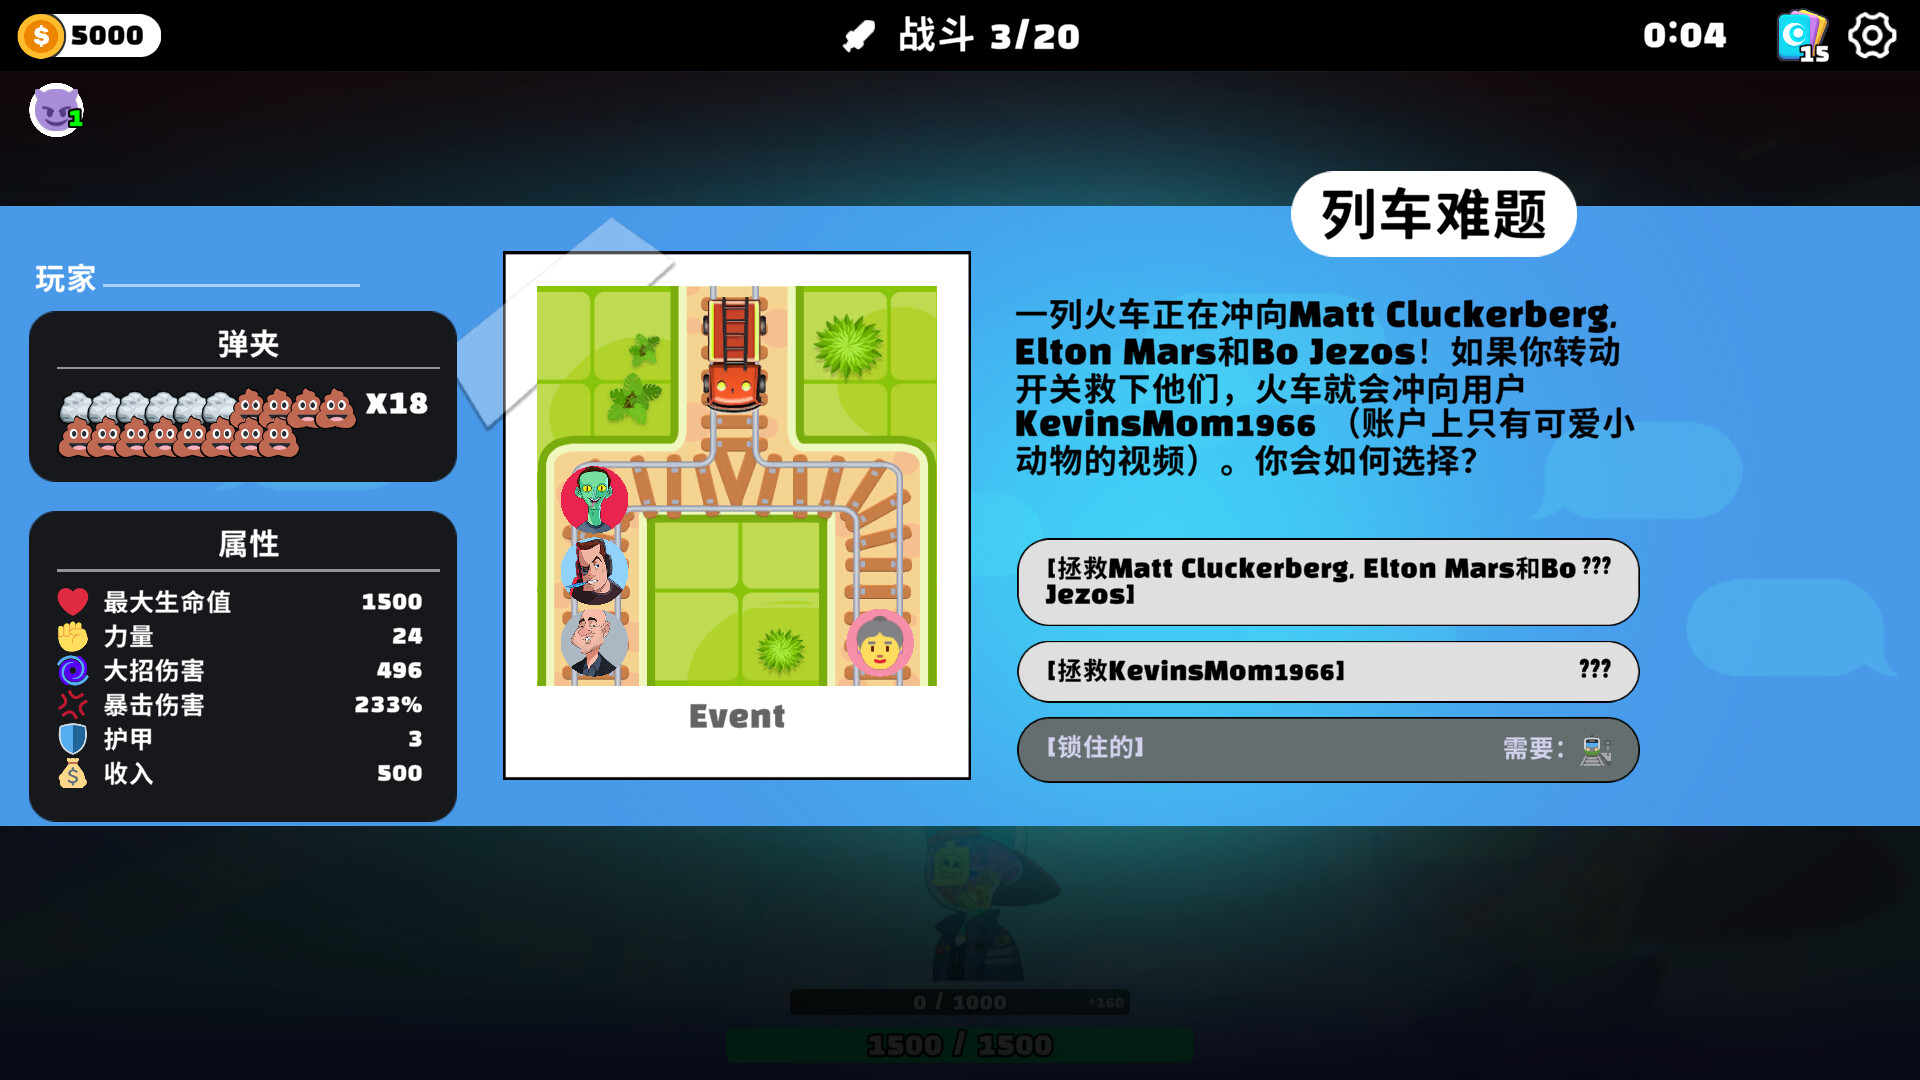 中文互聯網梗大雜燴惡搞遊戲《超級鍵盤俠》現已推出試玩Demo